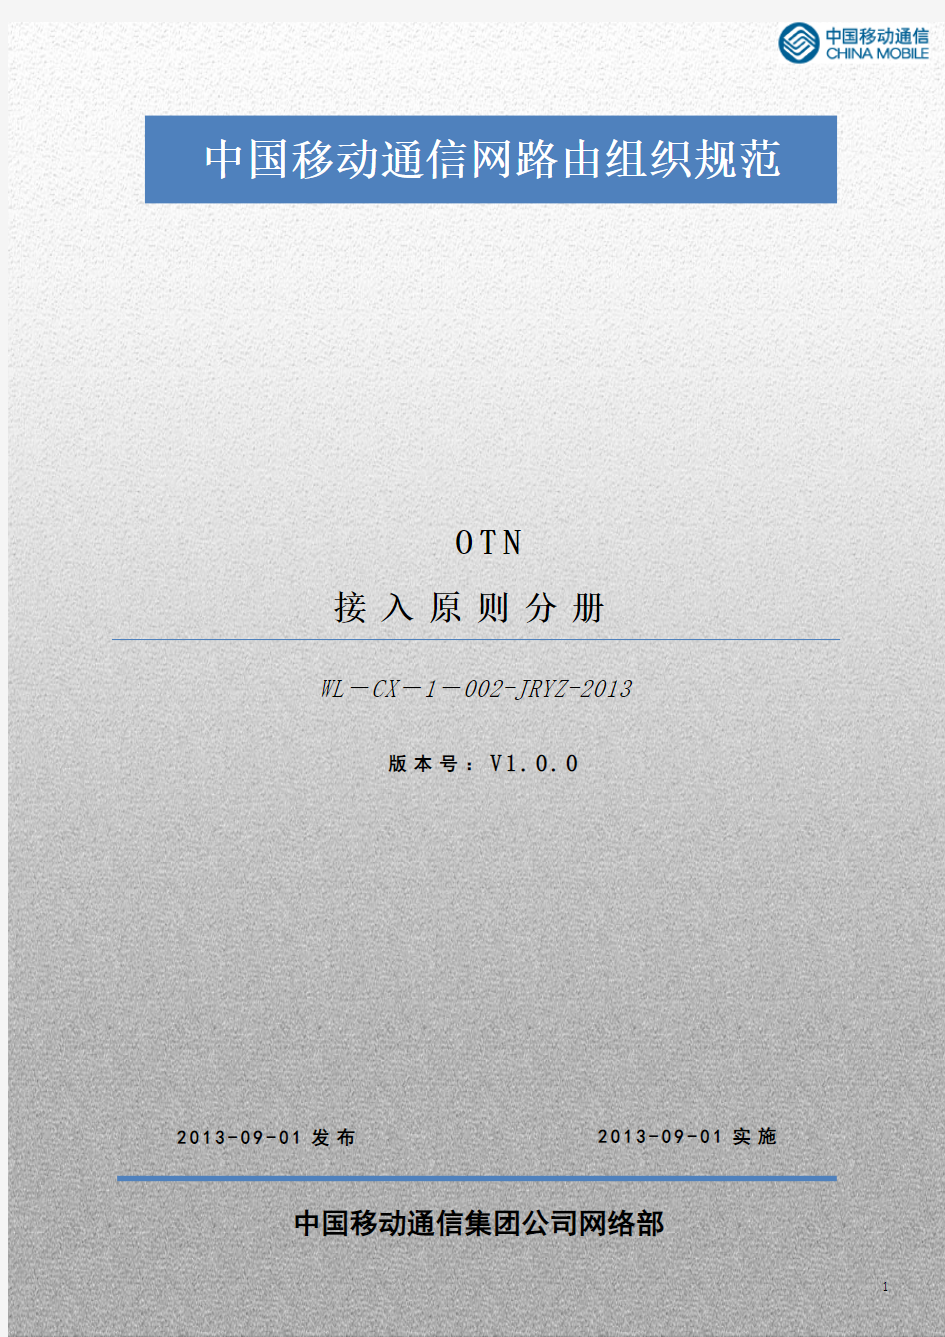 中国移动通信网络组织规范_OTN_接入原则V1.0.0